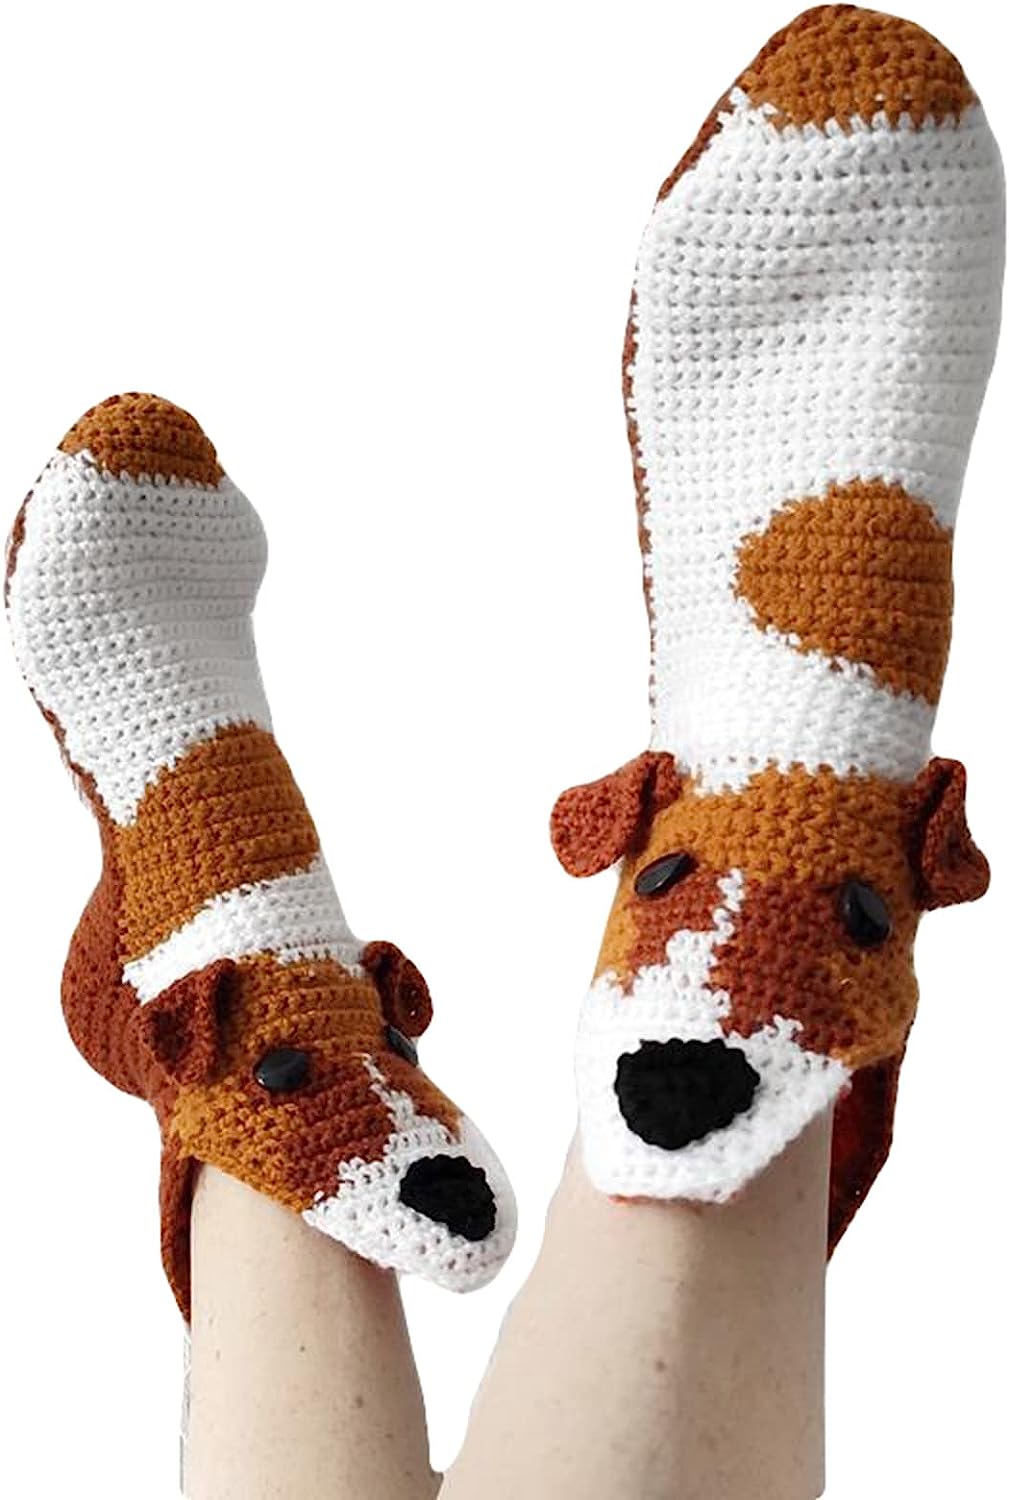 THATLILSHOP One Size / Dog Women Men Novelty Animal Pattern Socks Crazy Funny Knit Crocodile Socks Funny Gifts